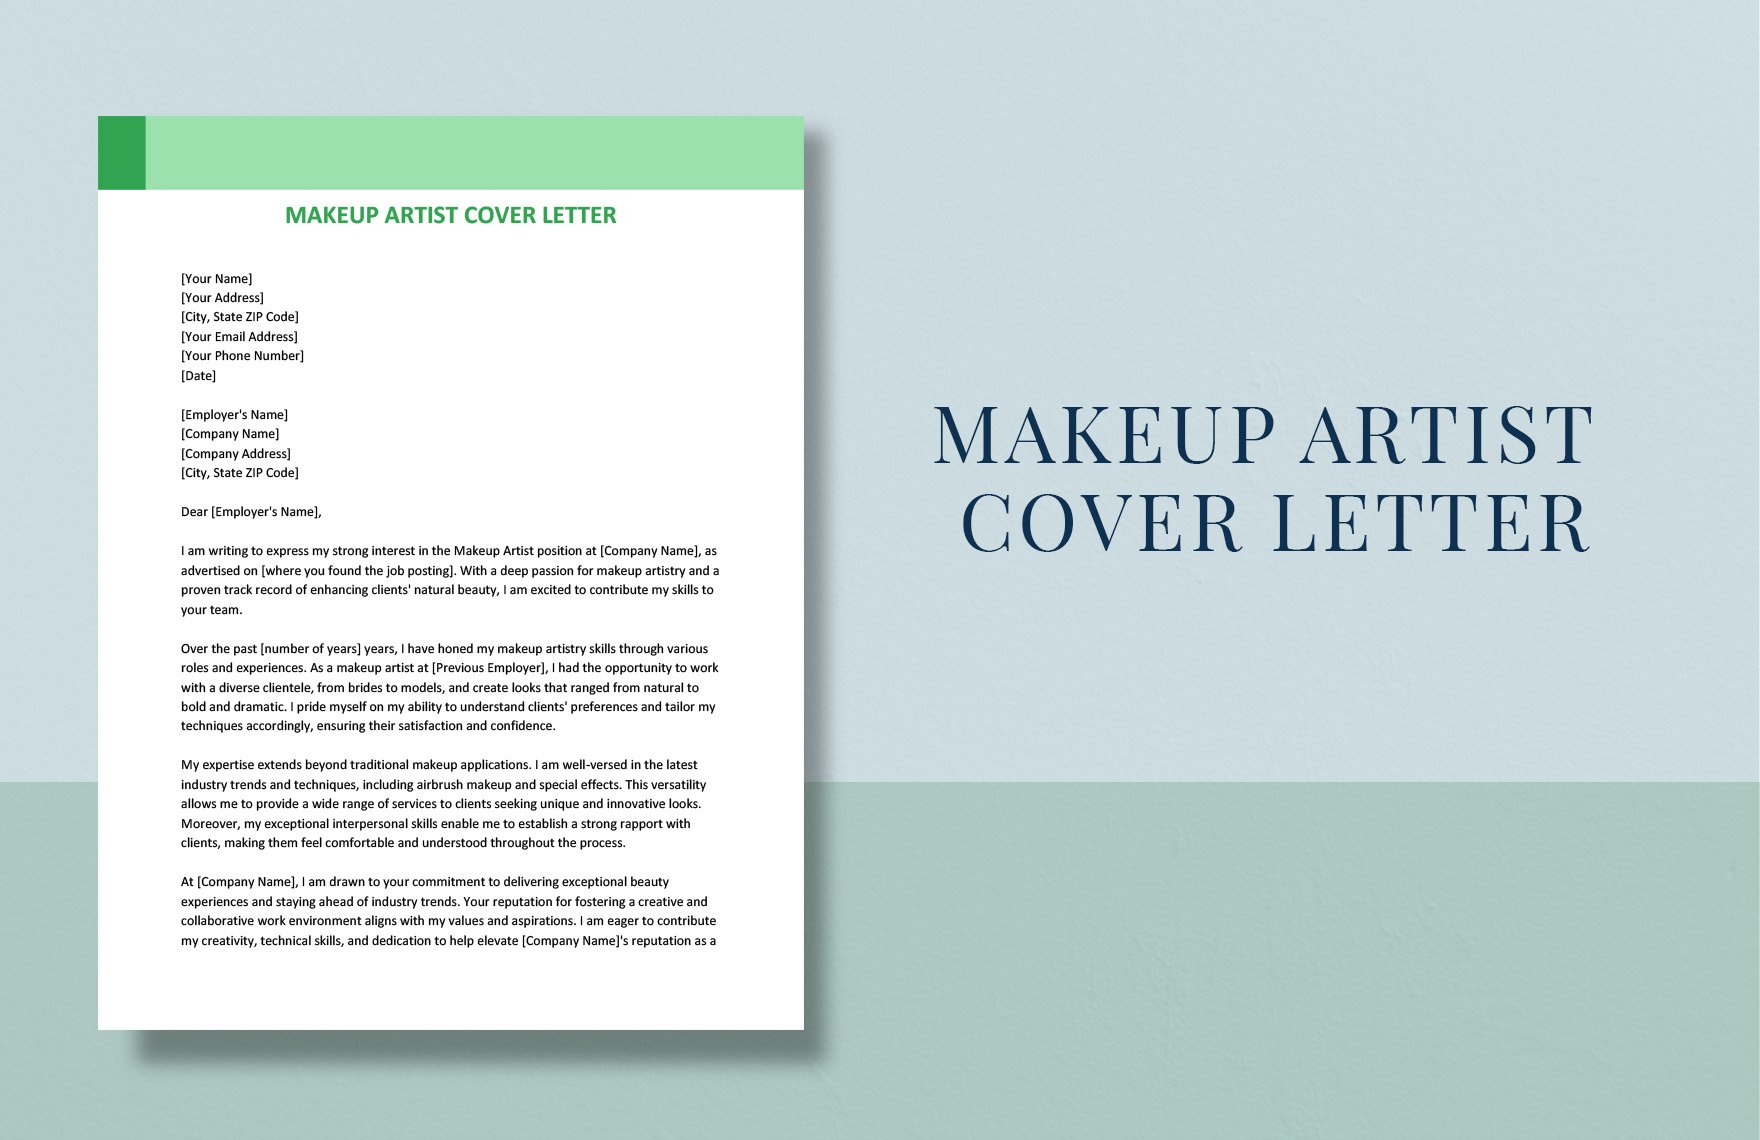 cover letter format makeup artist